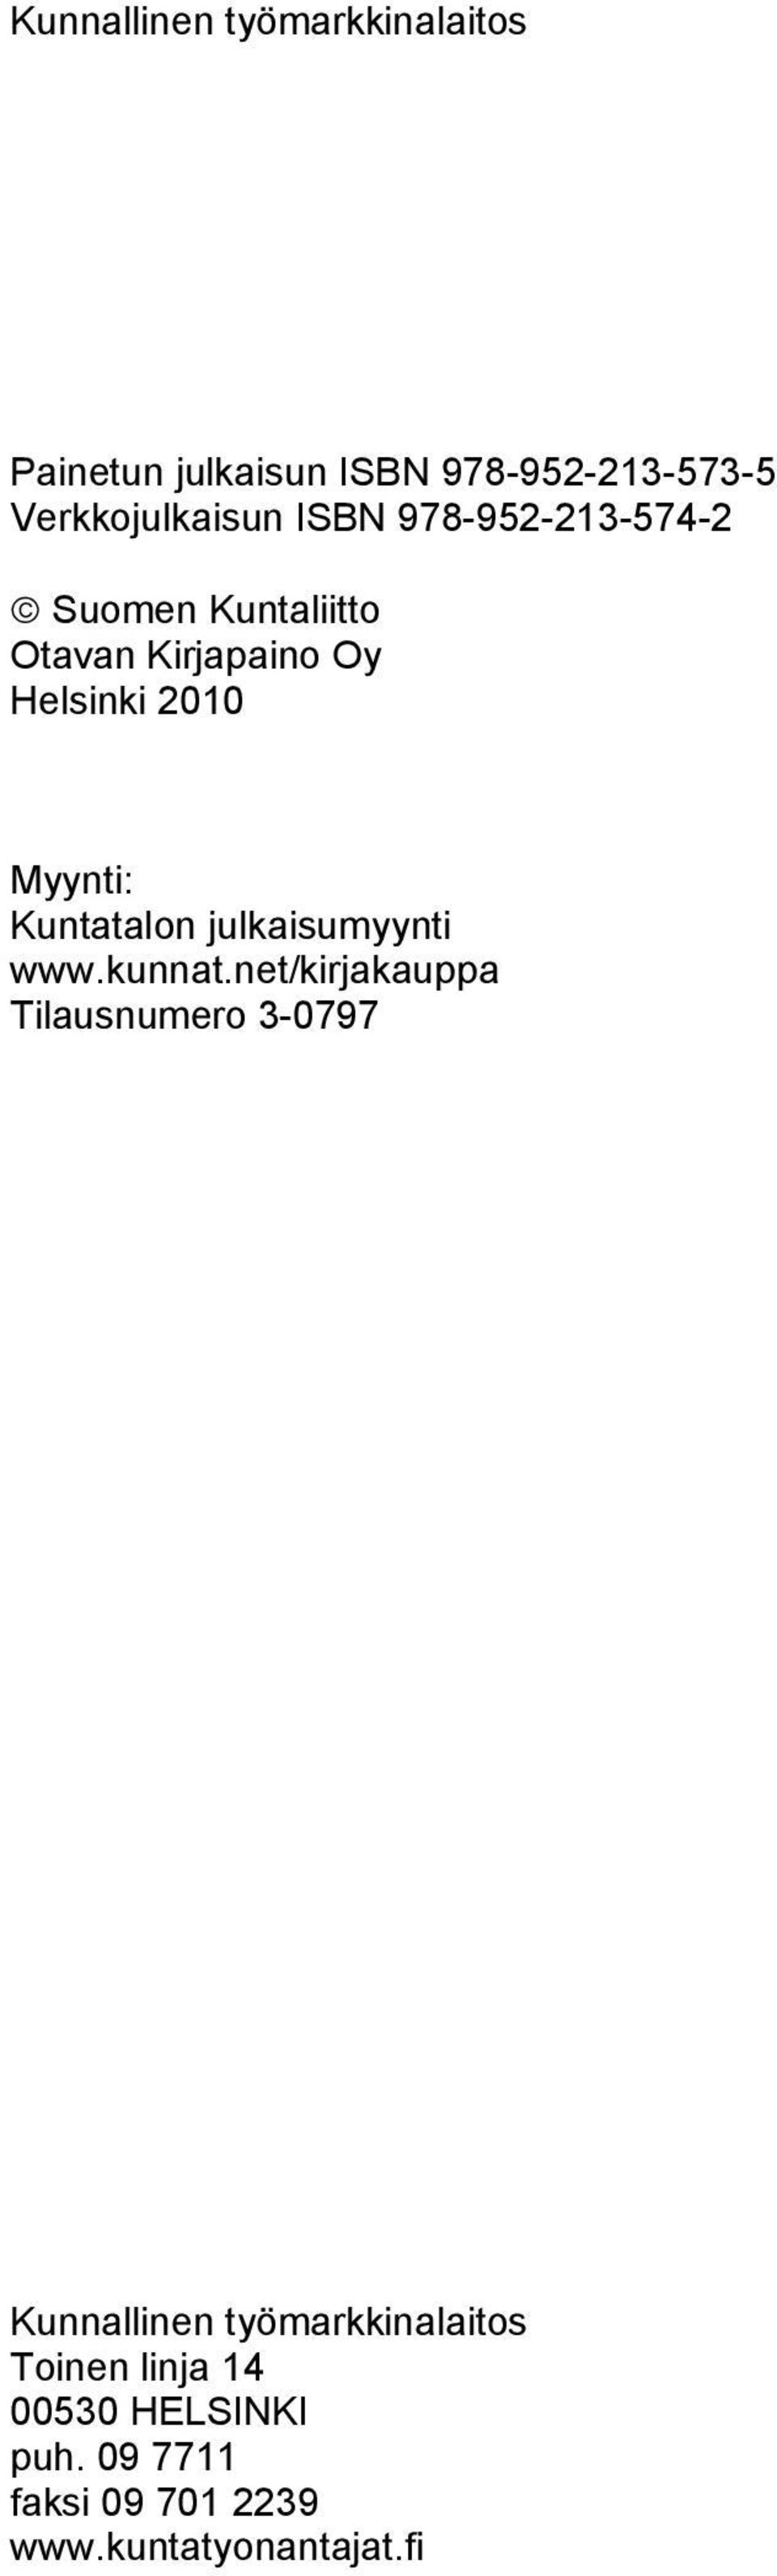 Kuntatalon julkaisumyynti www.kunnat.